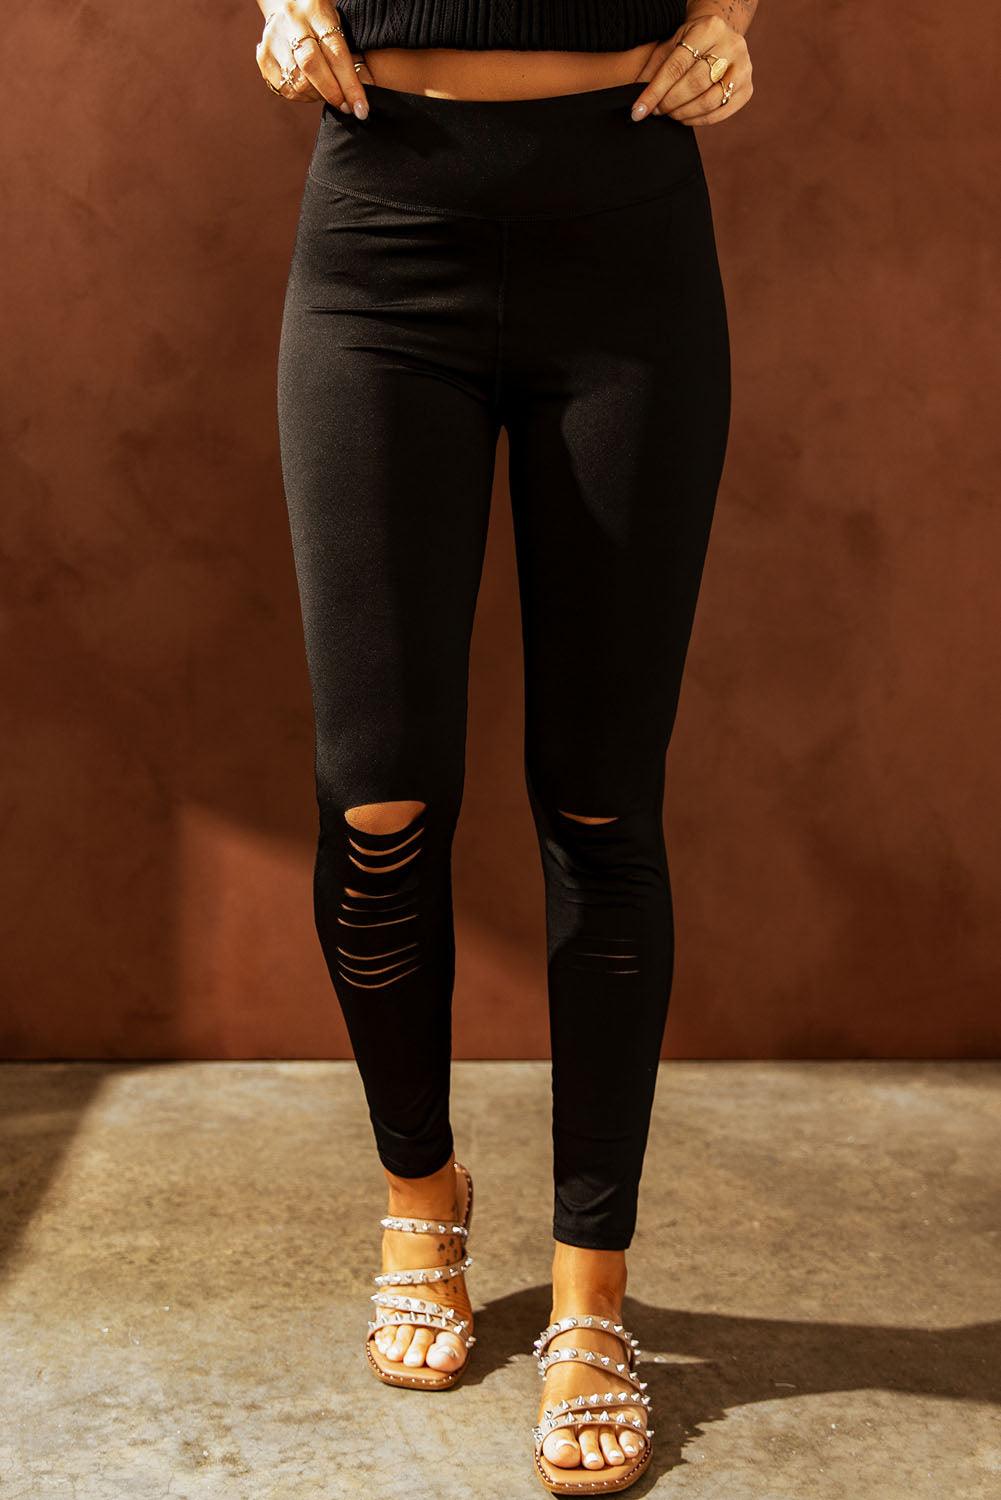 Bona Fide Fashion - Wide Waistband Distressed Slim Fit Leggings - Women Fashion - Bona Fide Fashion